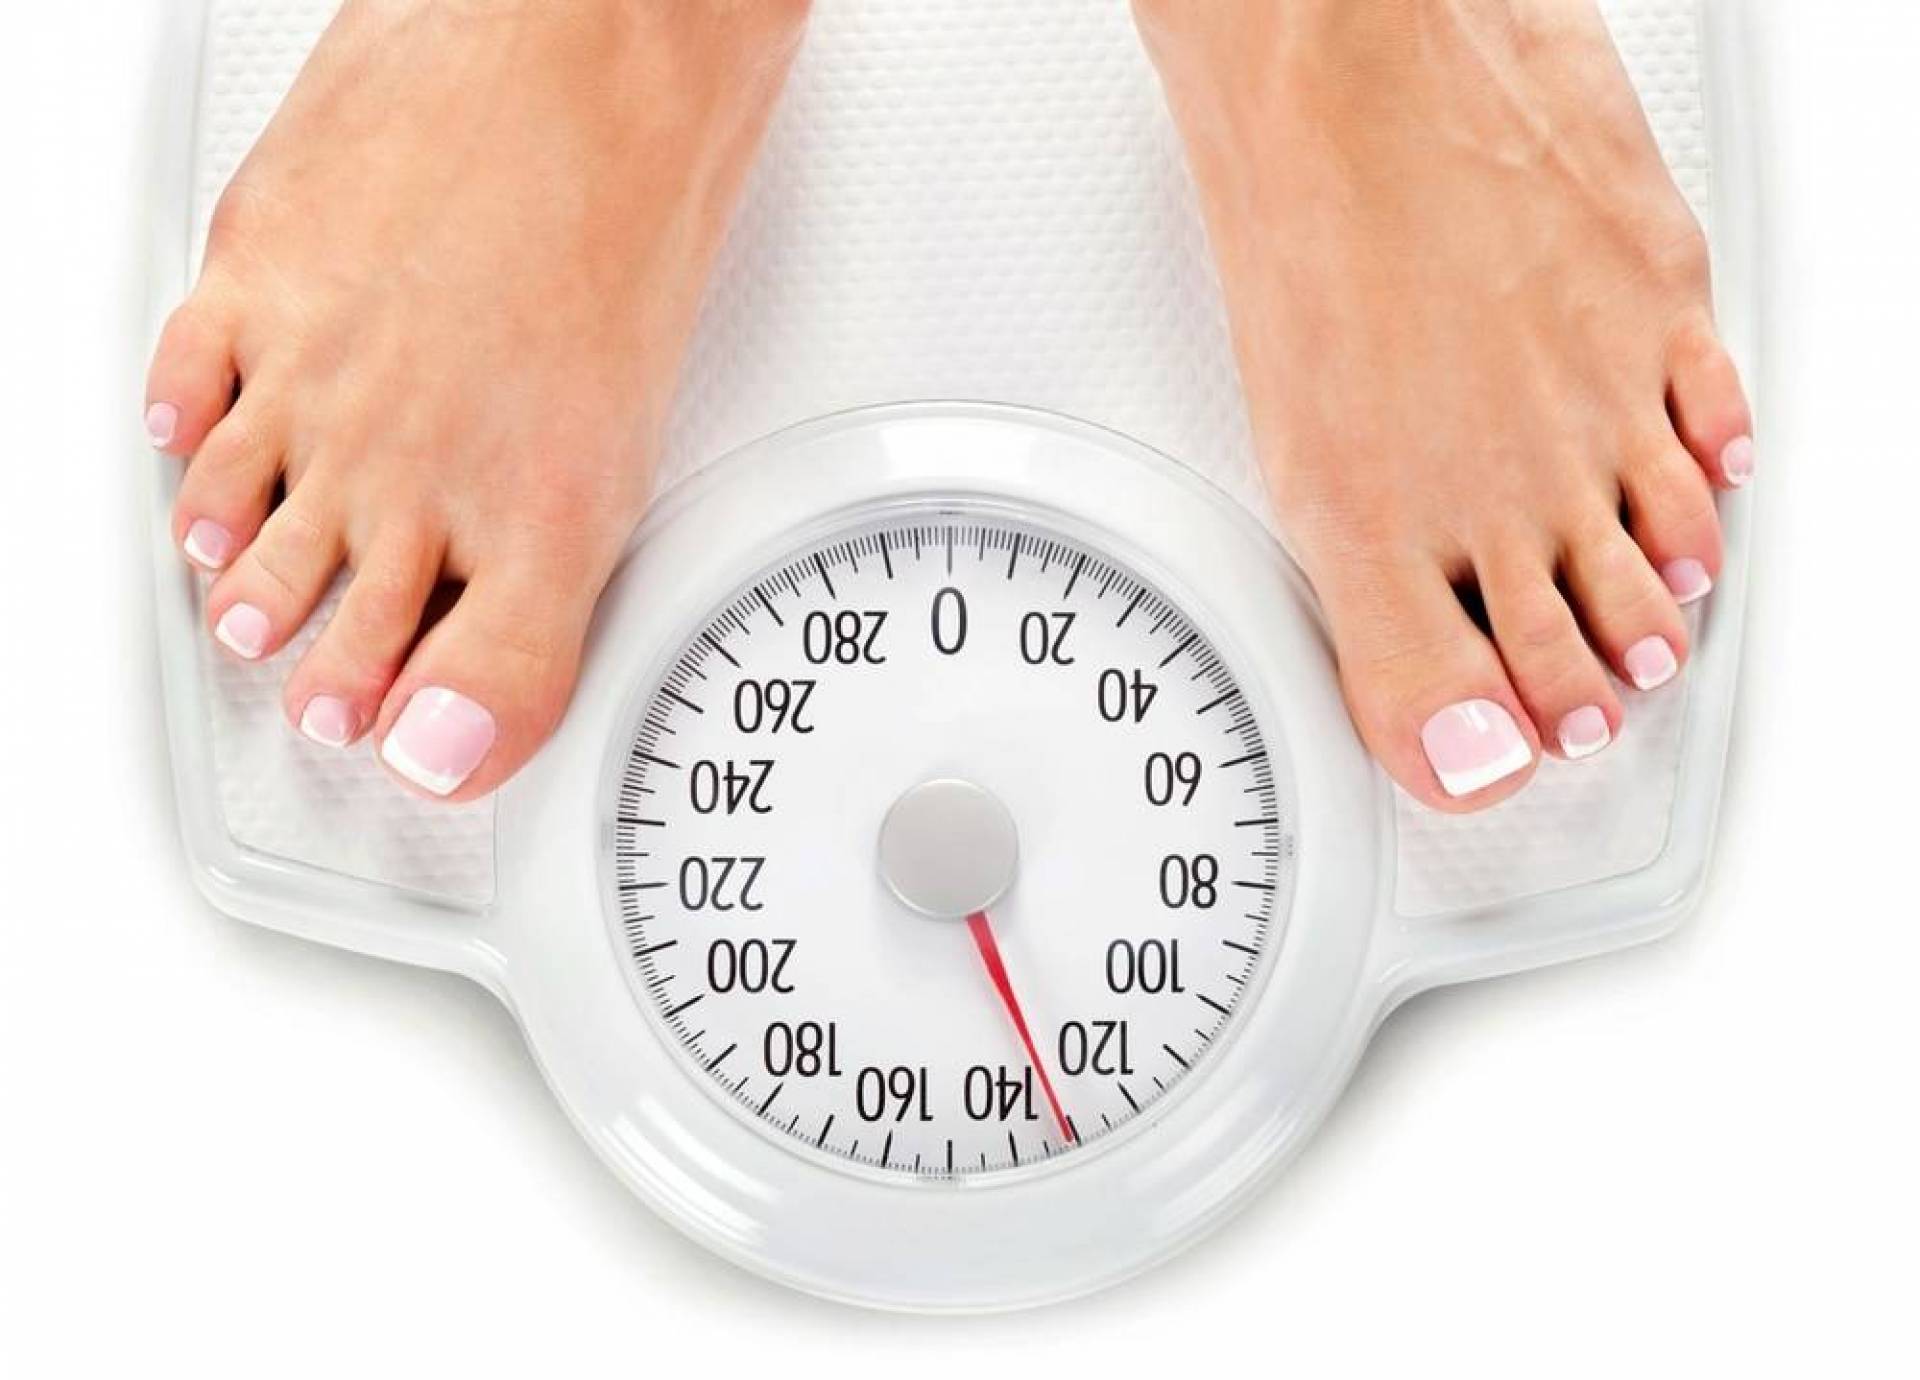 Вес. Контроль веса. Ноги на весах. Снижение массы тела. Нормализация массы тела.